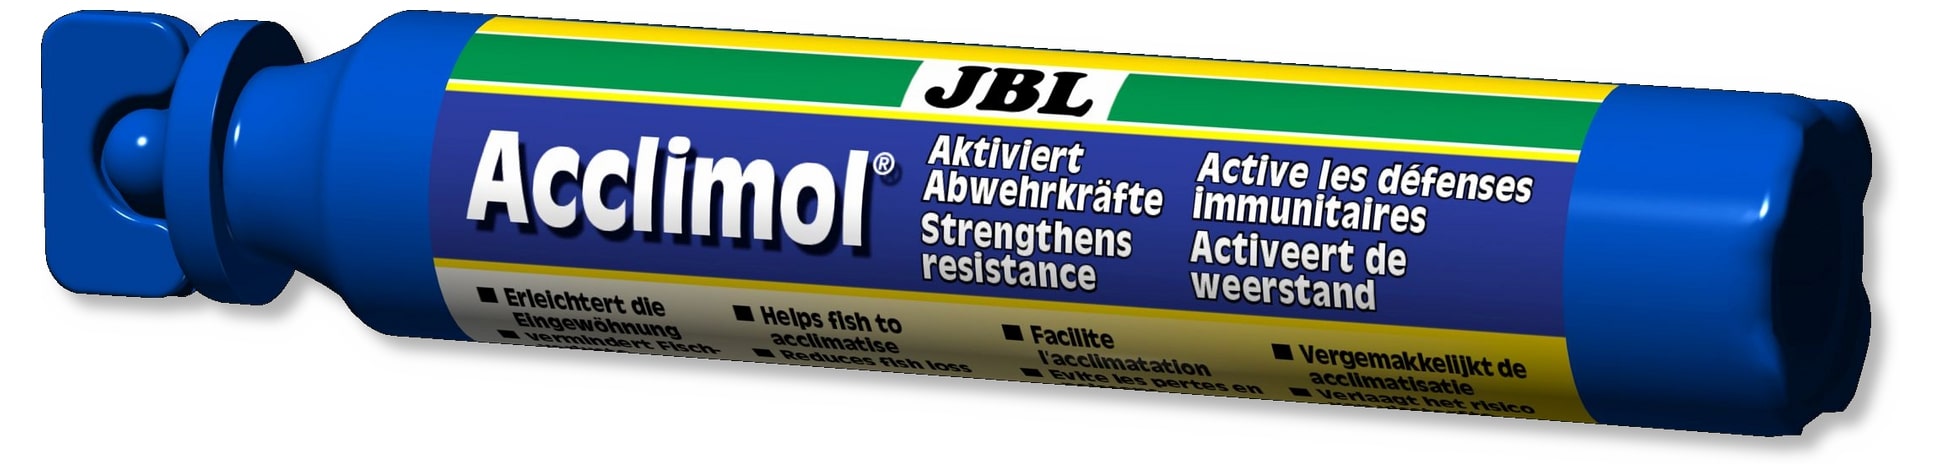 JBL Acclimol 50 ml réducteur de stress pour l\'acclimatation de nouveaux poissons. Traite entre 60 et 200 L d\'eau